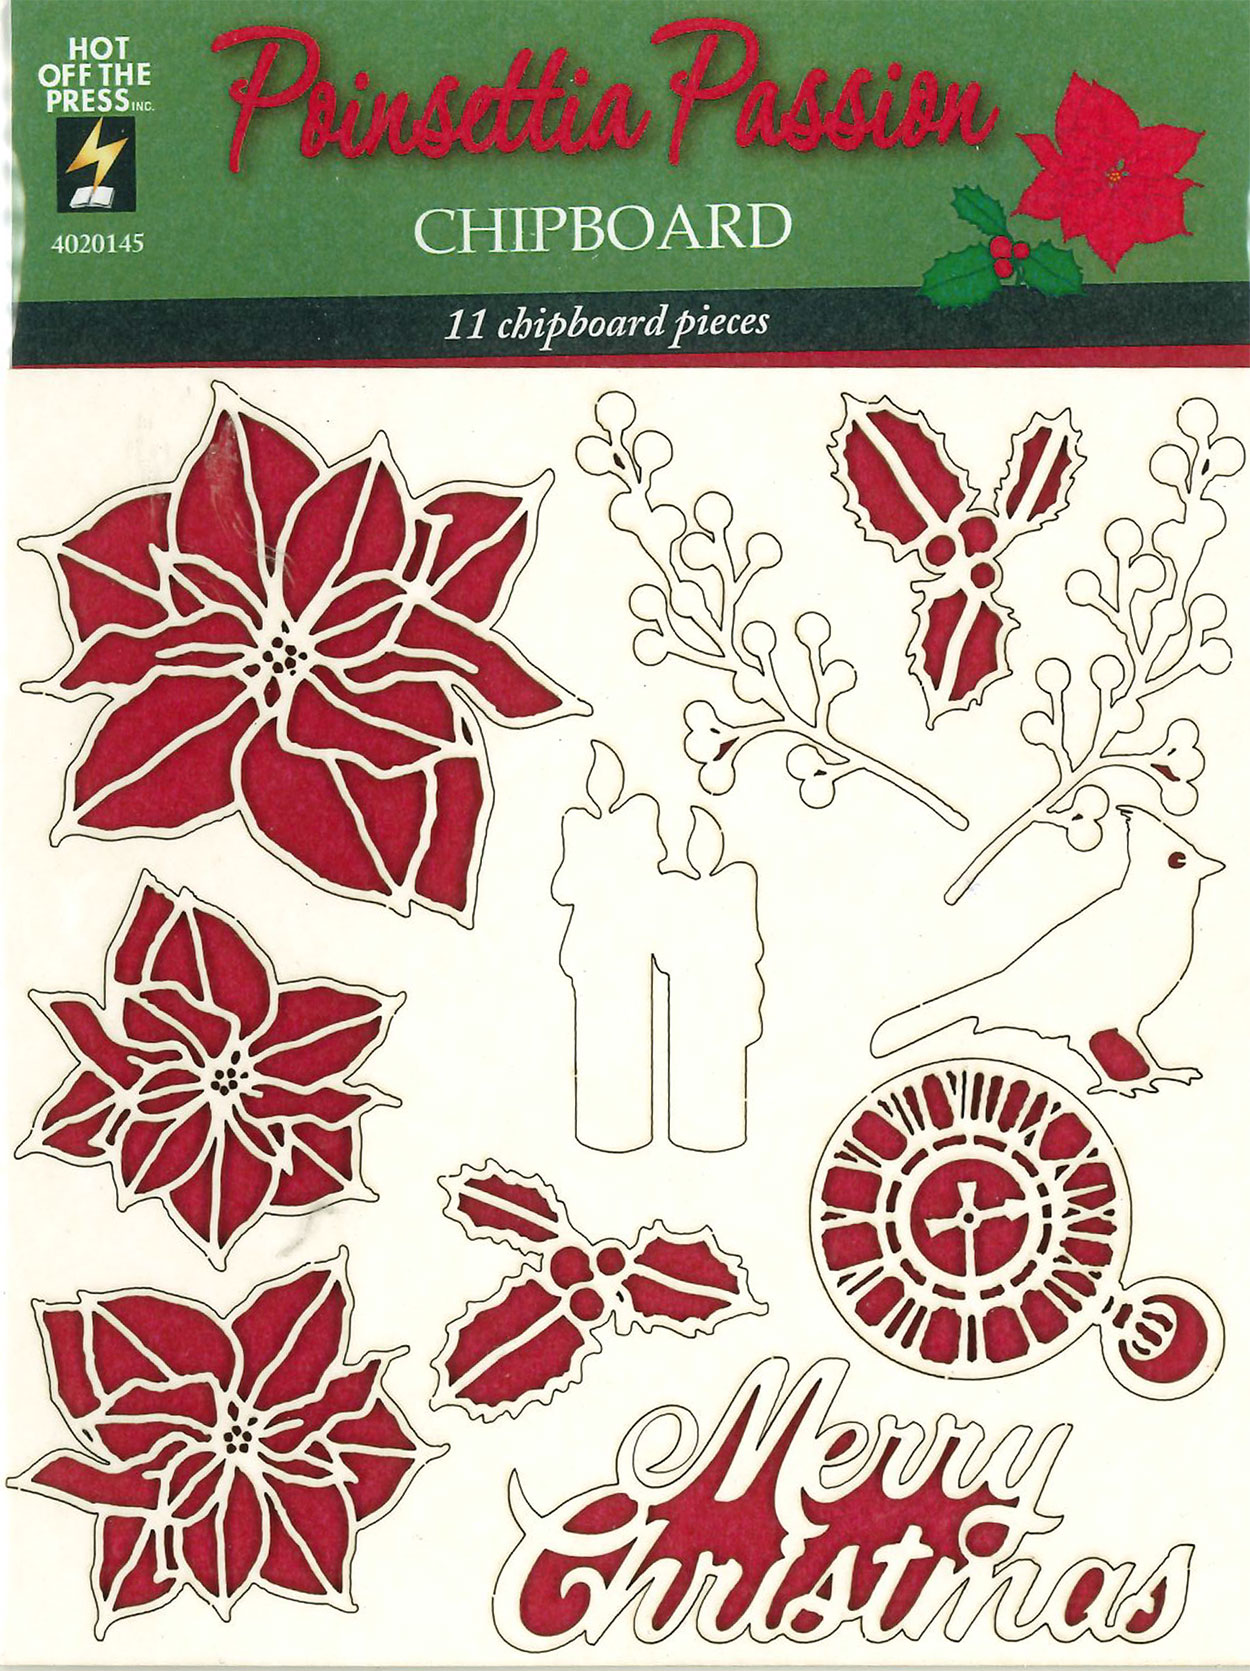 Poinsettia Passion Chipboard